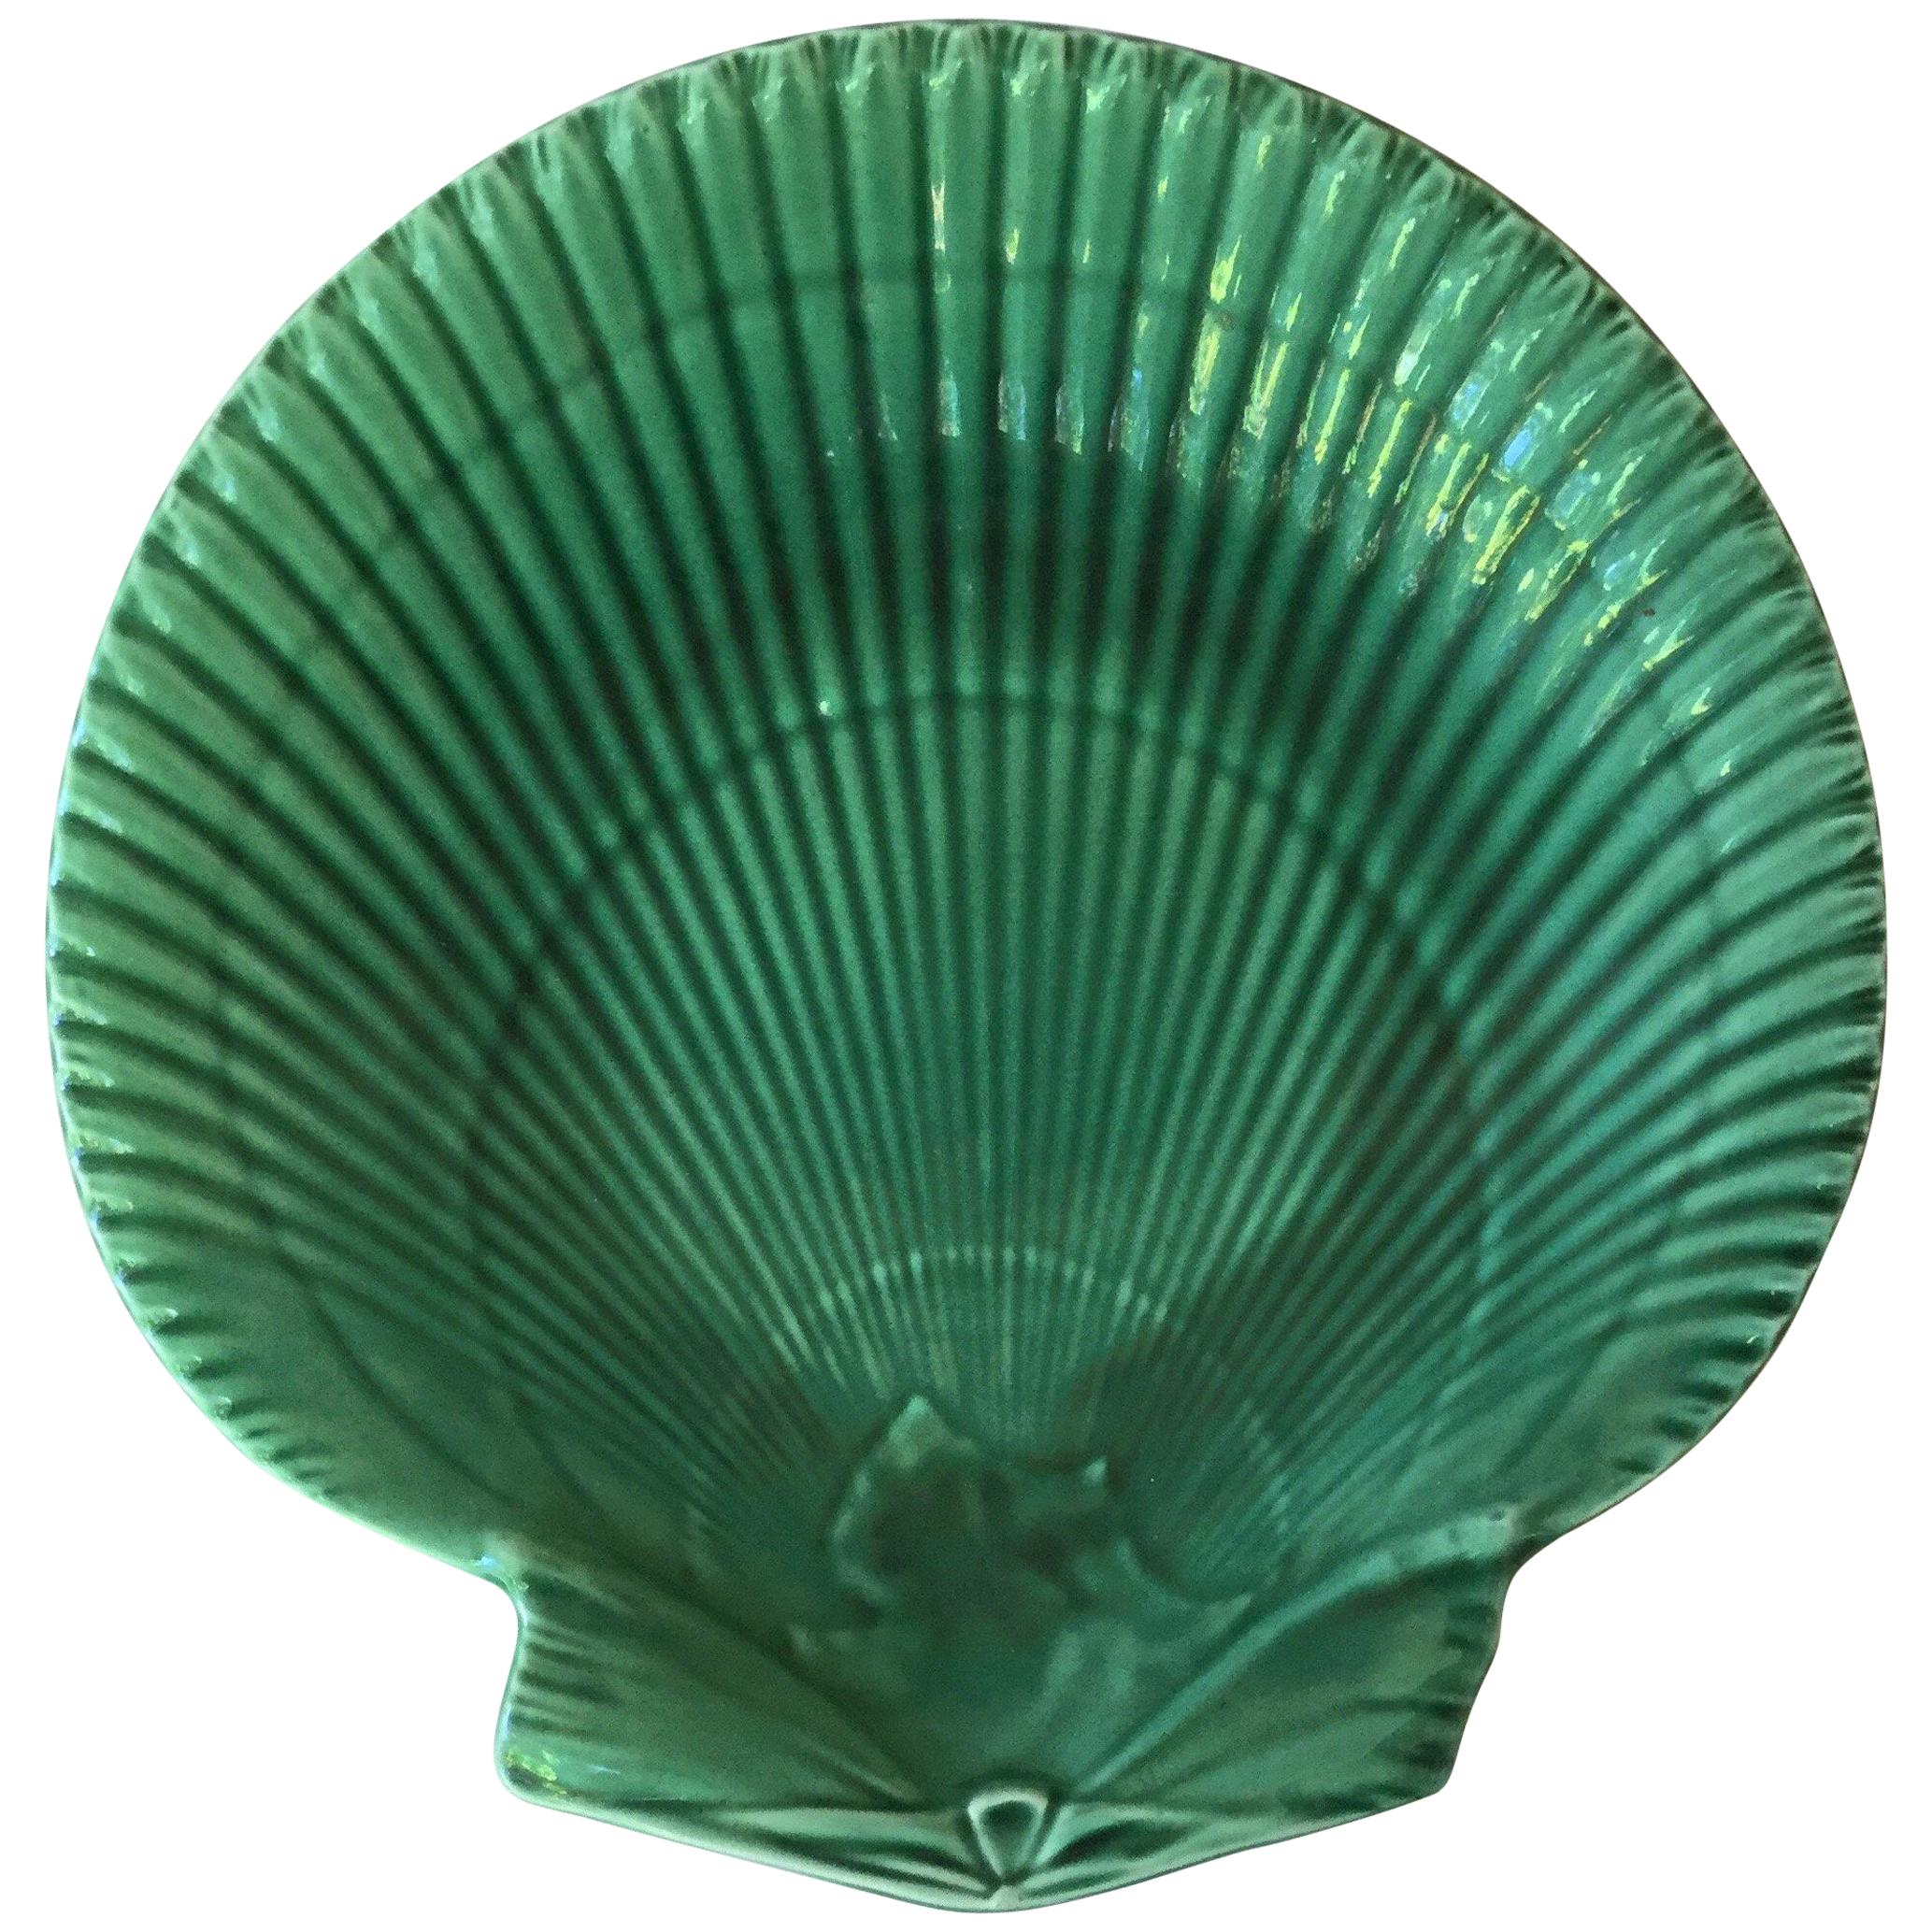 Wedgwood Green Majolica Shell Plate